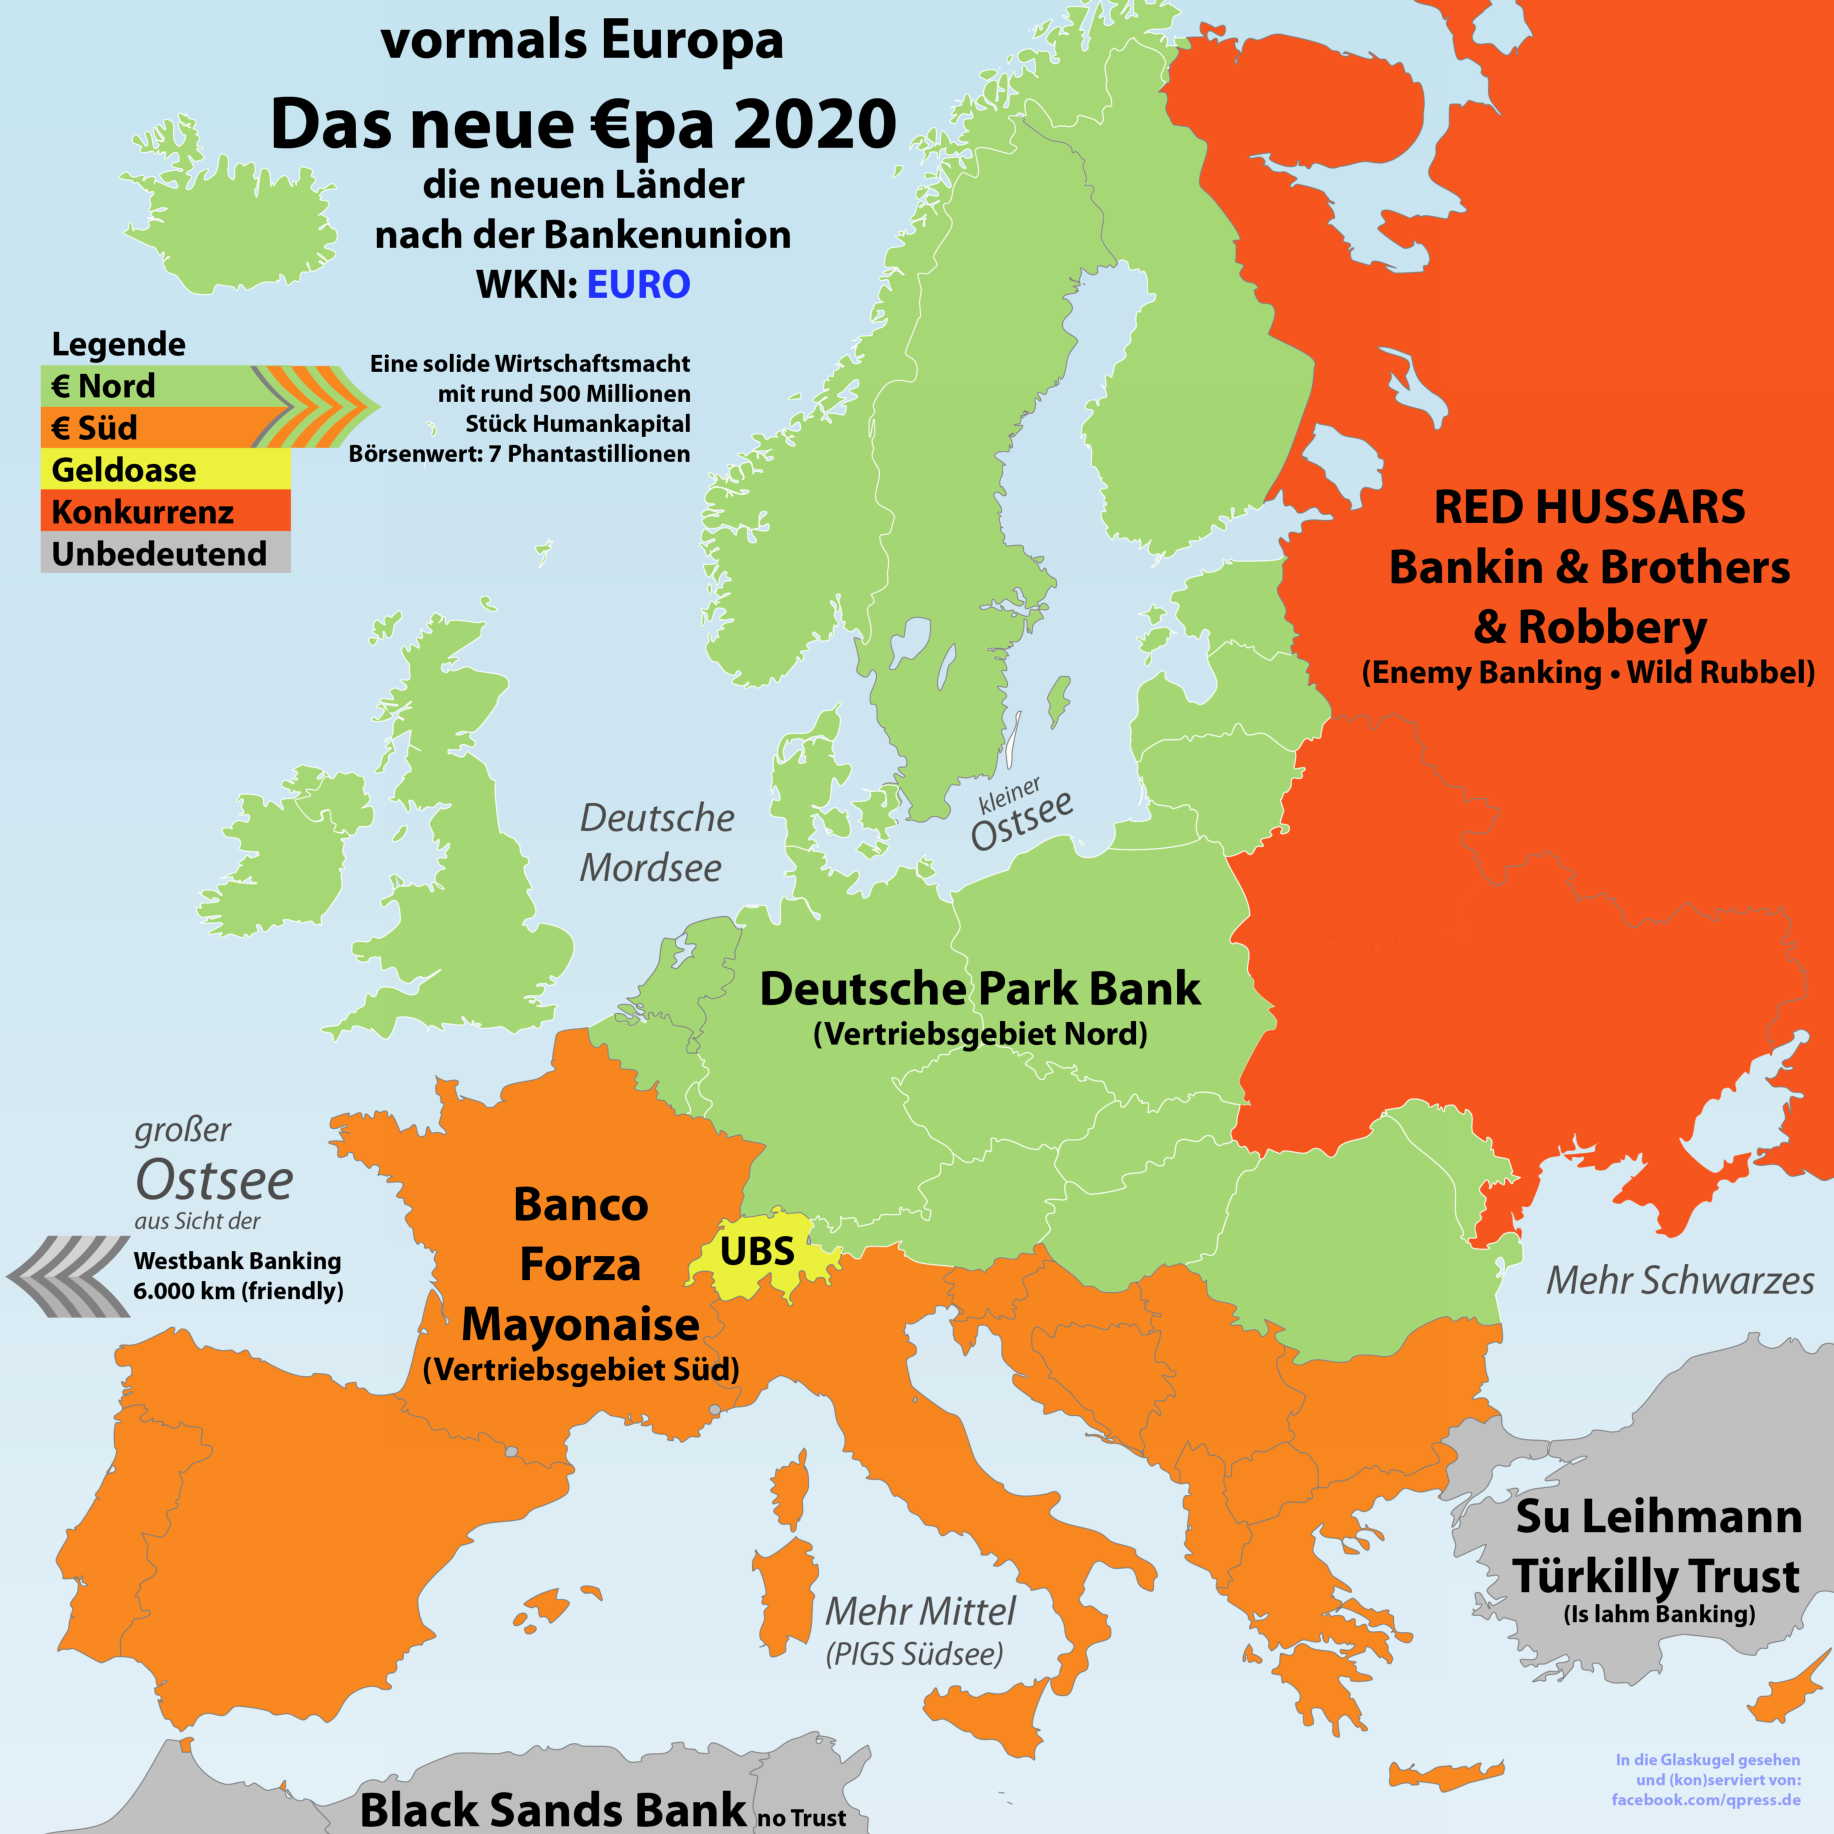 Europa nach dem großen Geldkrieg in den Grenzen von 2020